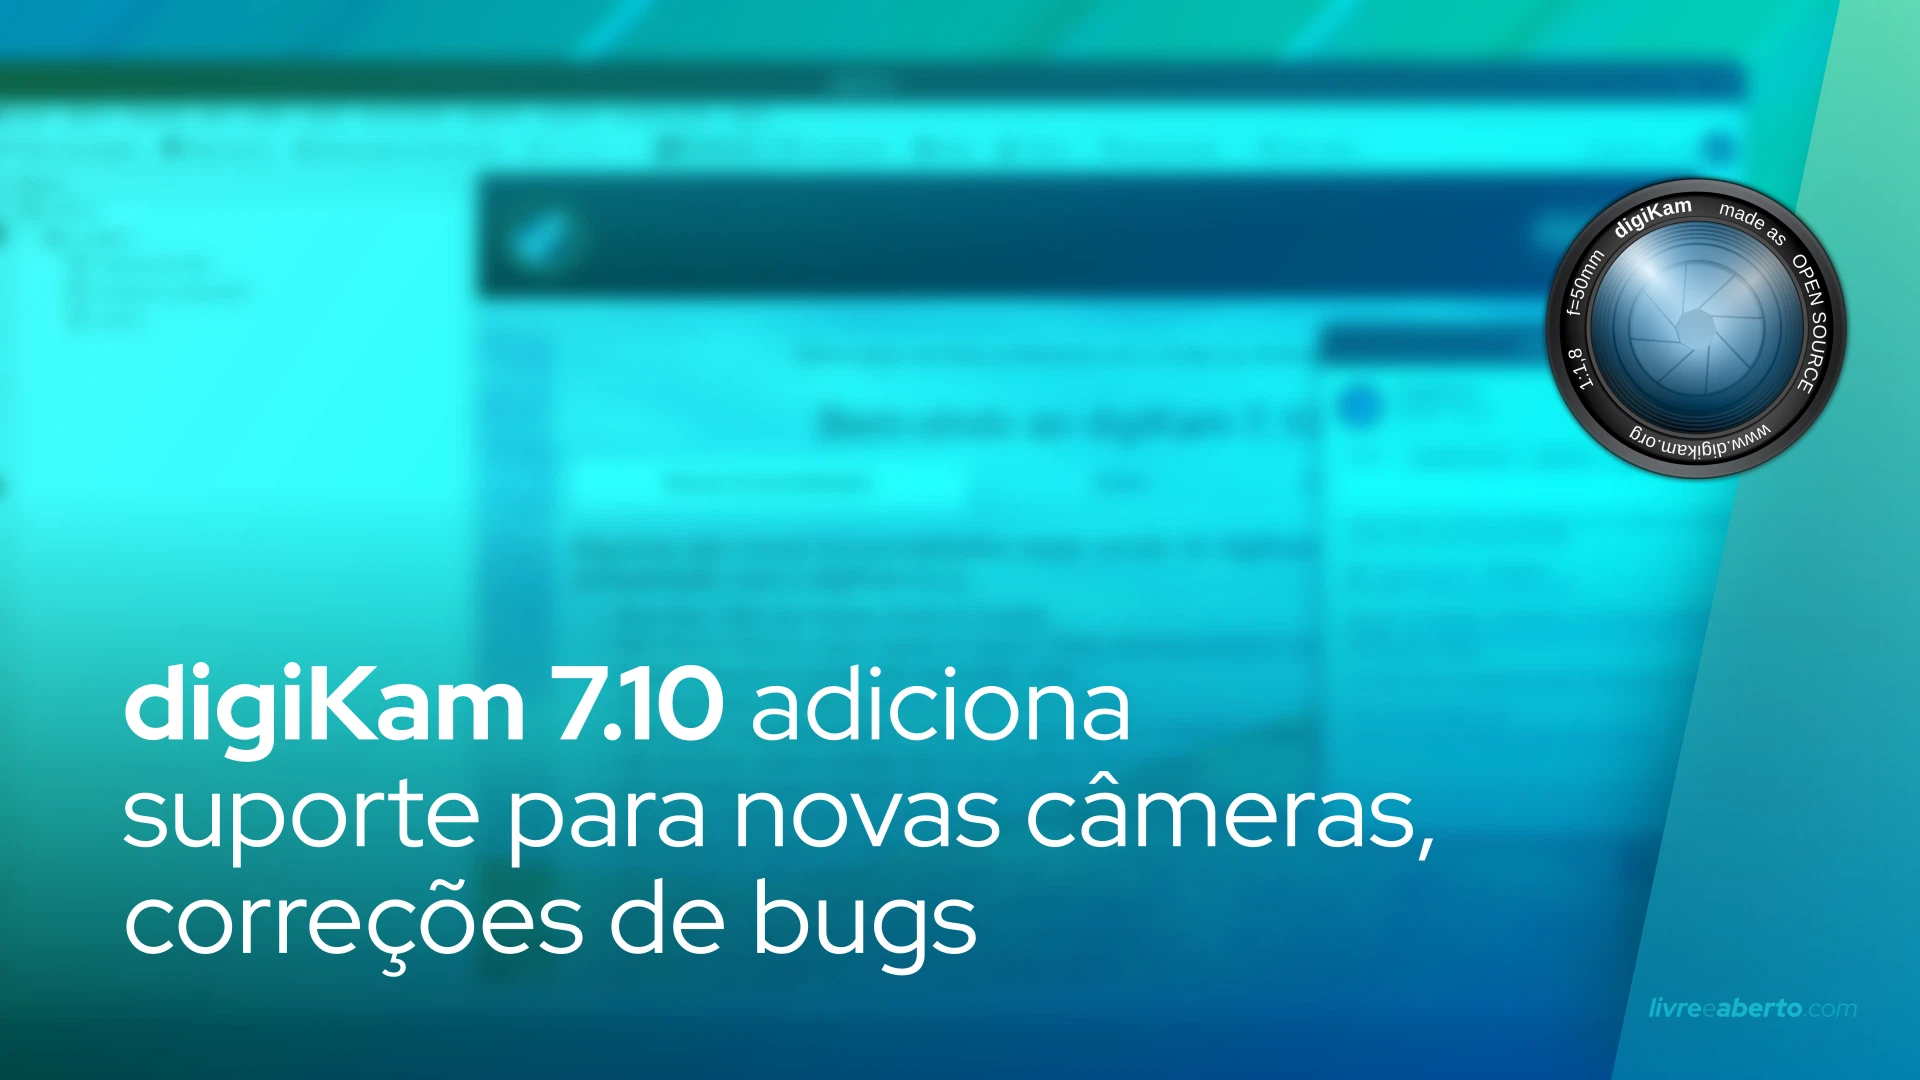 digiKam 7.10 adiciona suporte para novas câmeras, correções de bugs